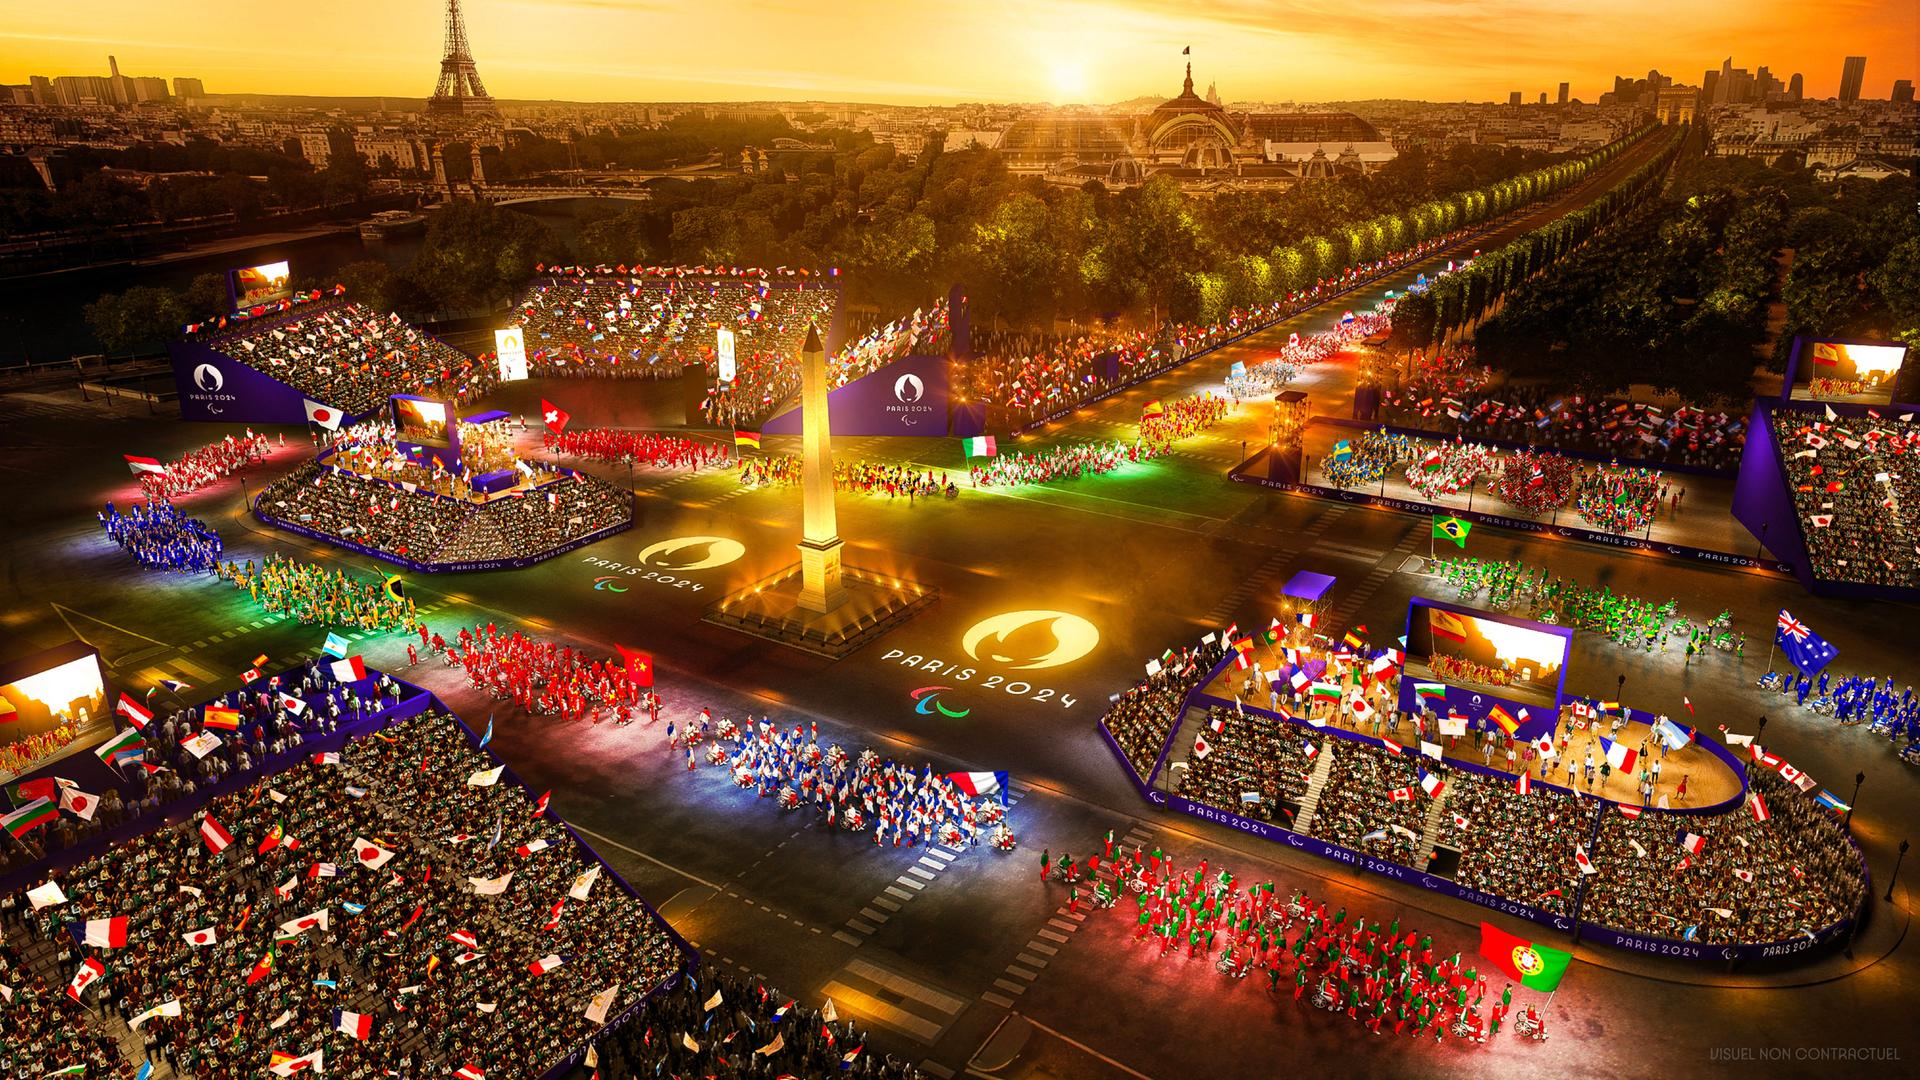 Das Bild zeigt den Concorde-Platz in Paris in vielen bunten Farben.